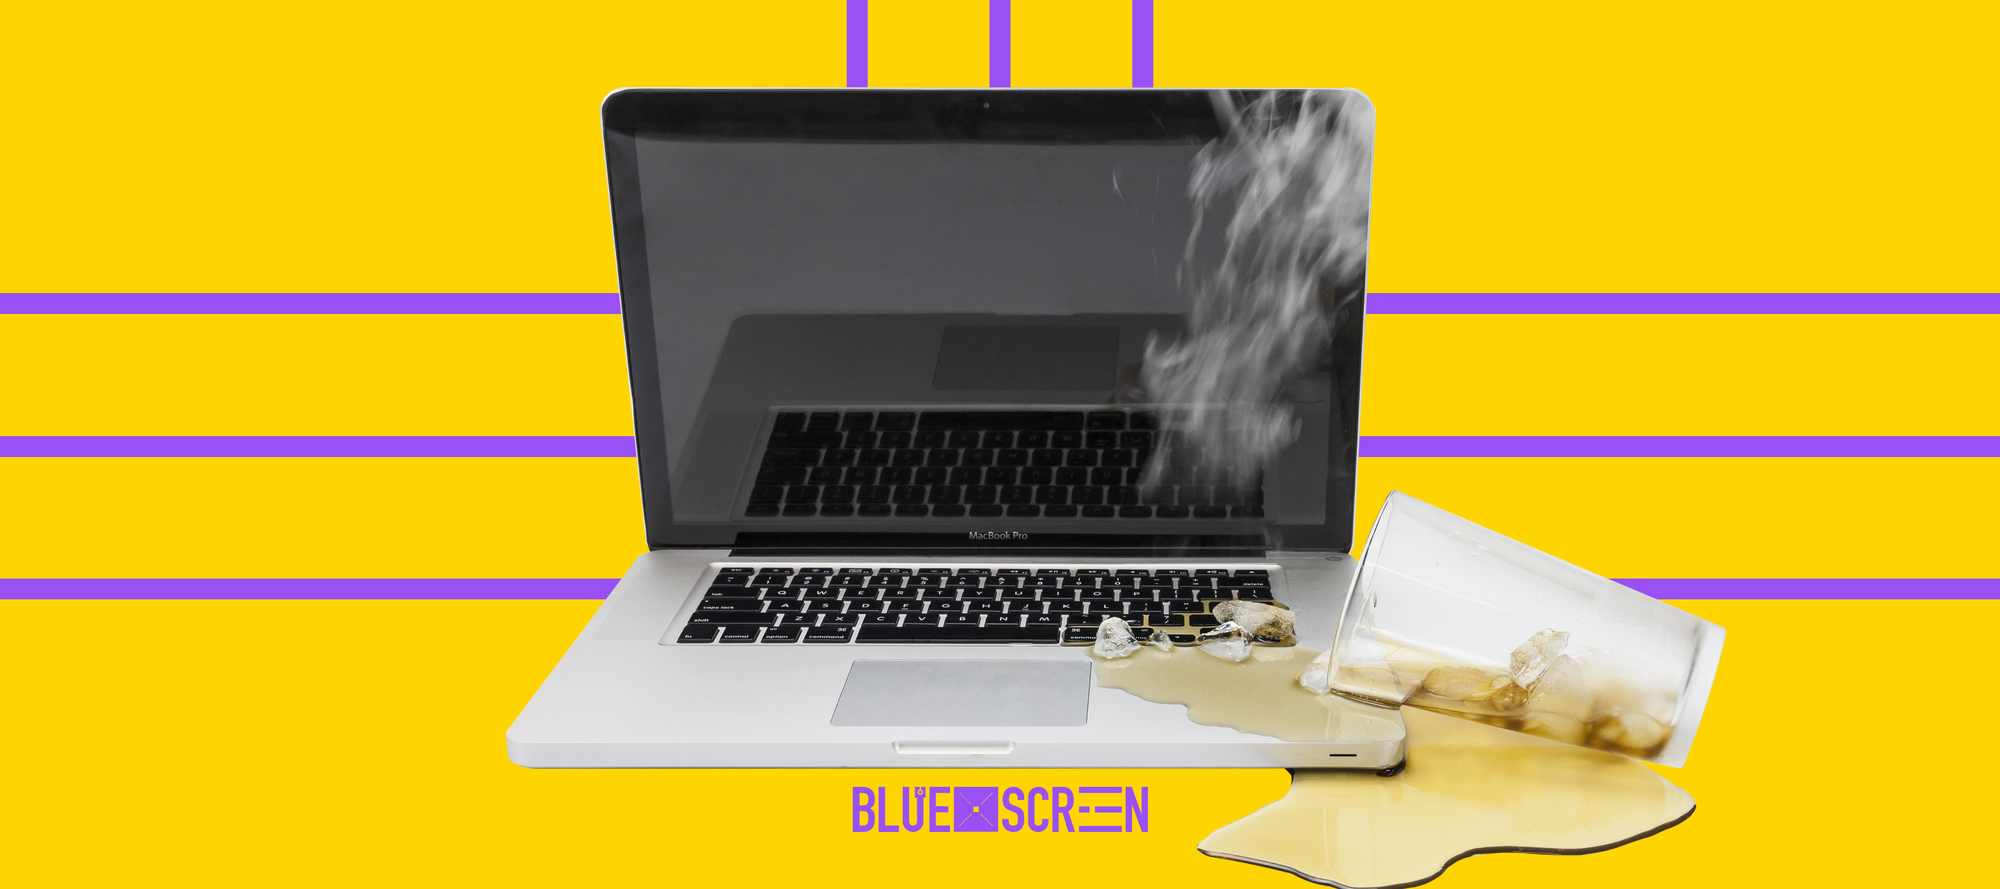 Вода в ноутбуке: что делать если пролил воду на клавиатуру или экран